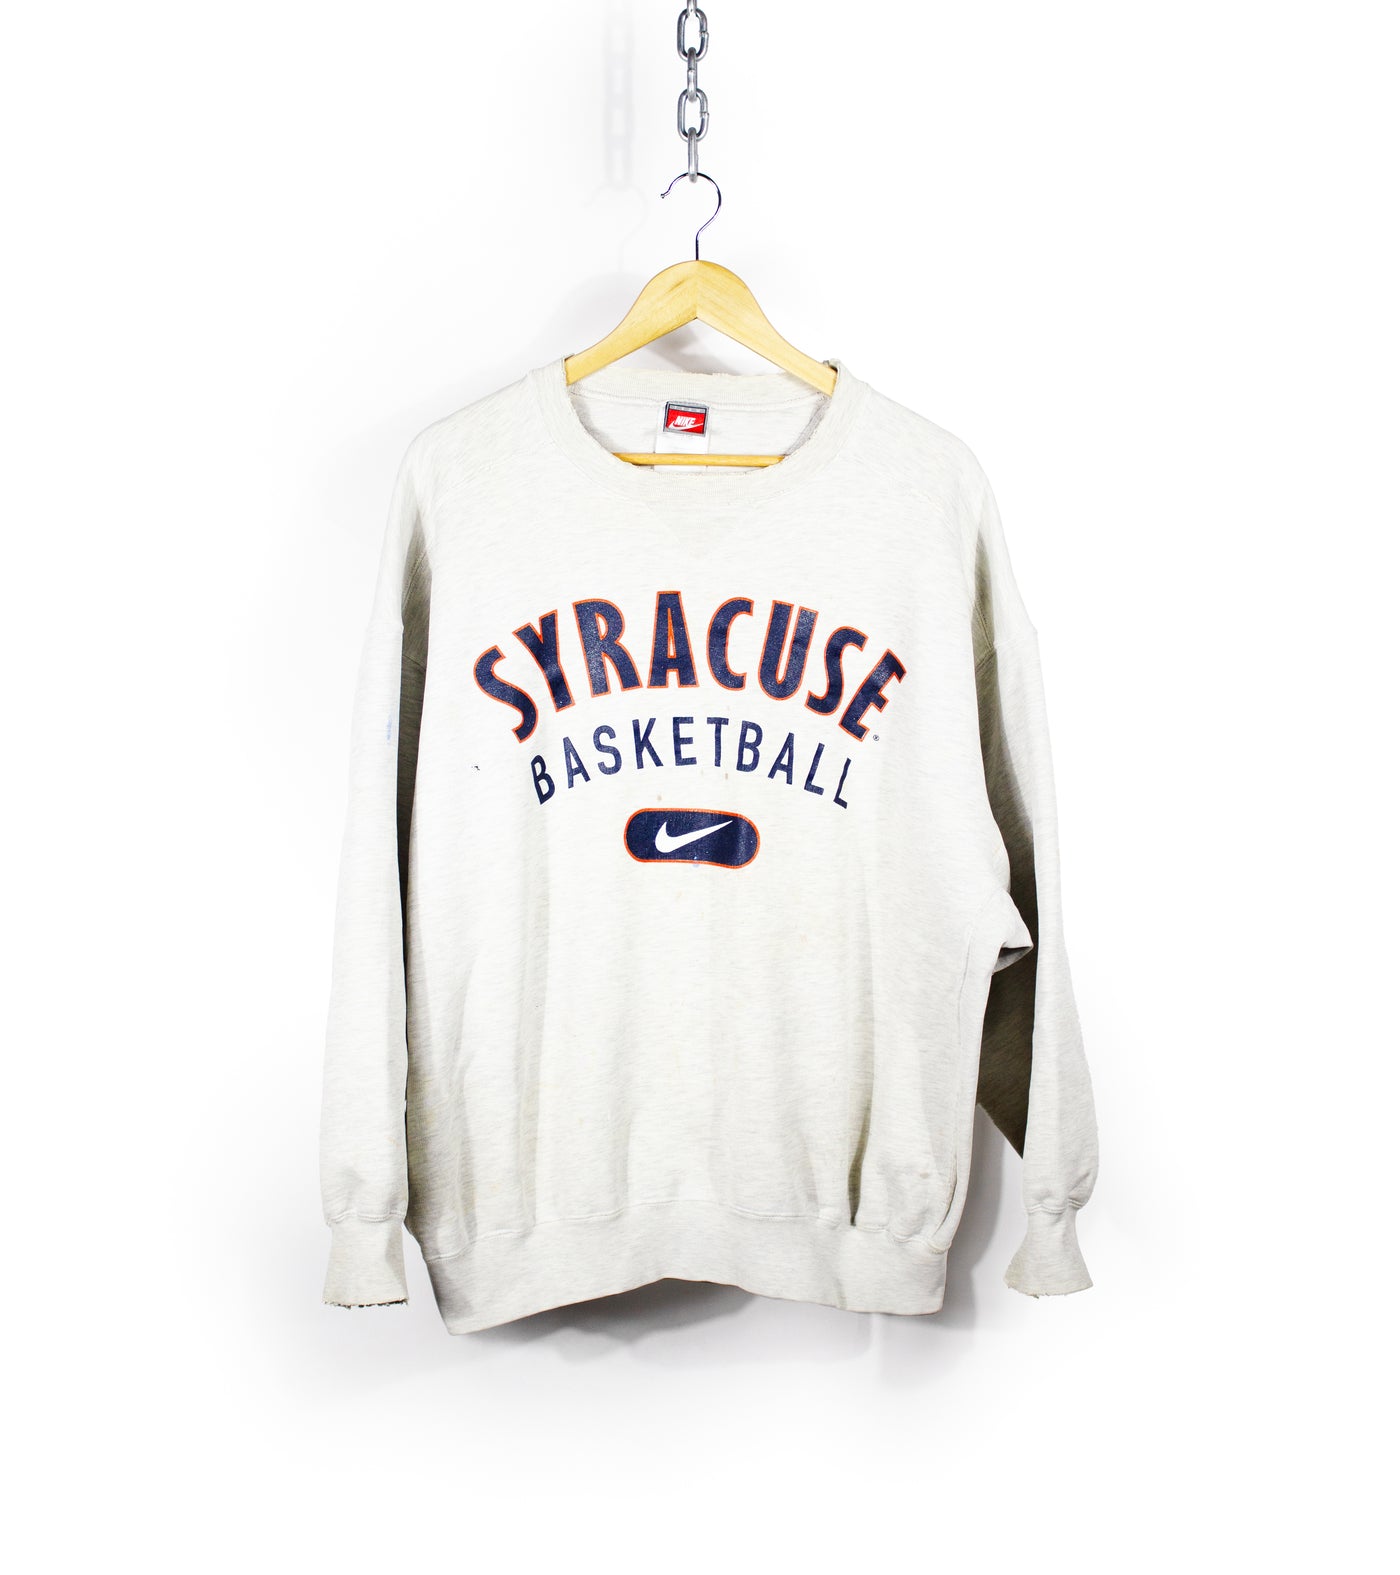 Vintage 90s Nike Syracuse Basketball Distressed Crewneck